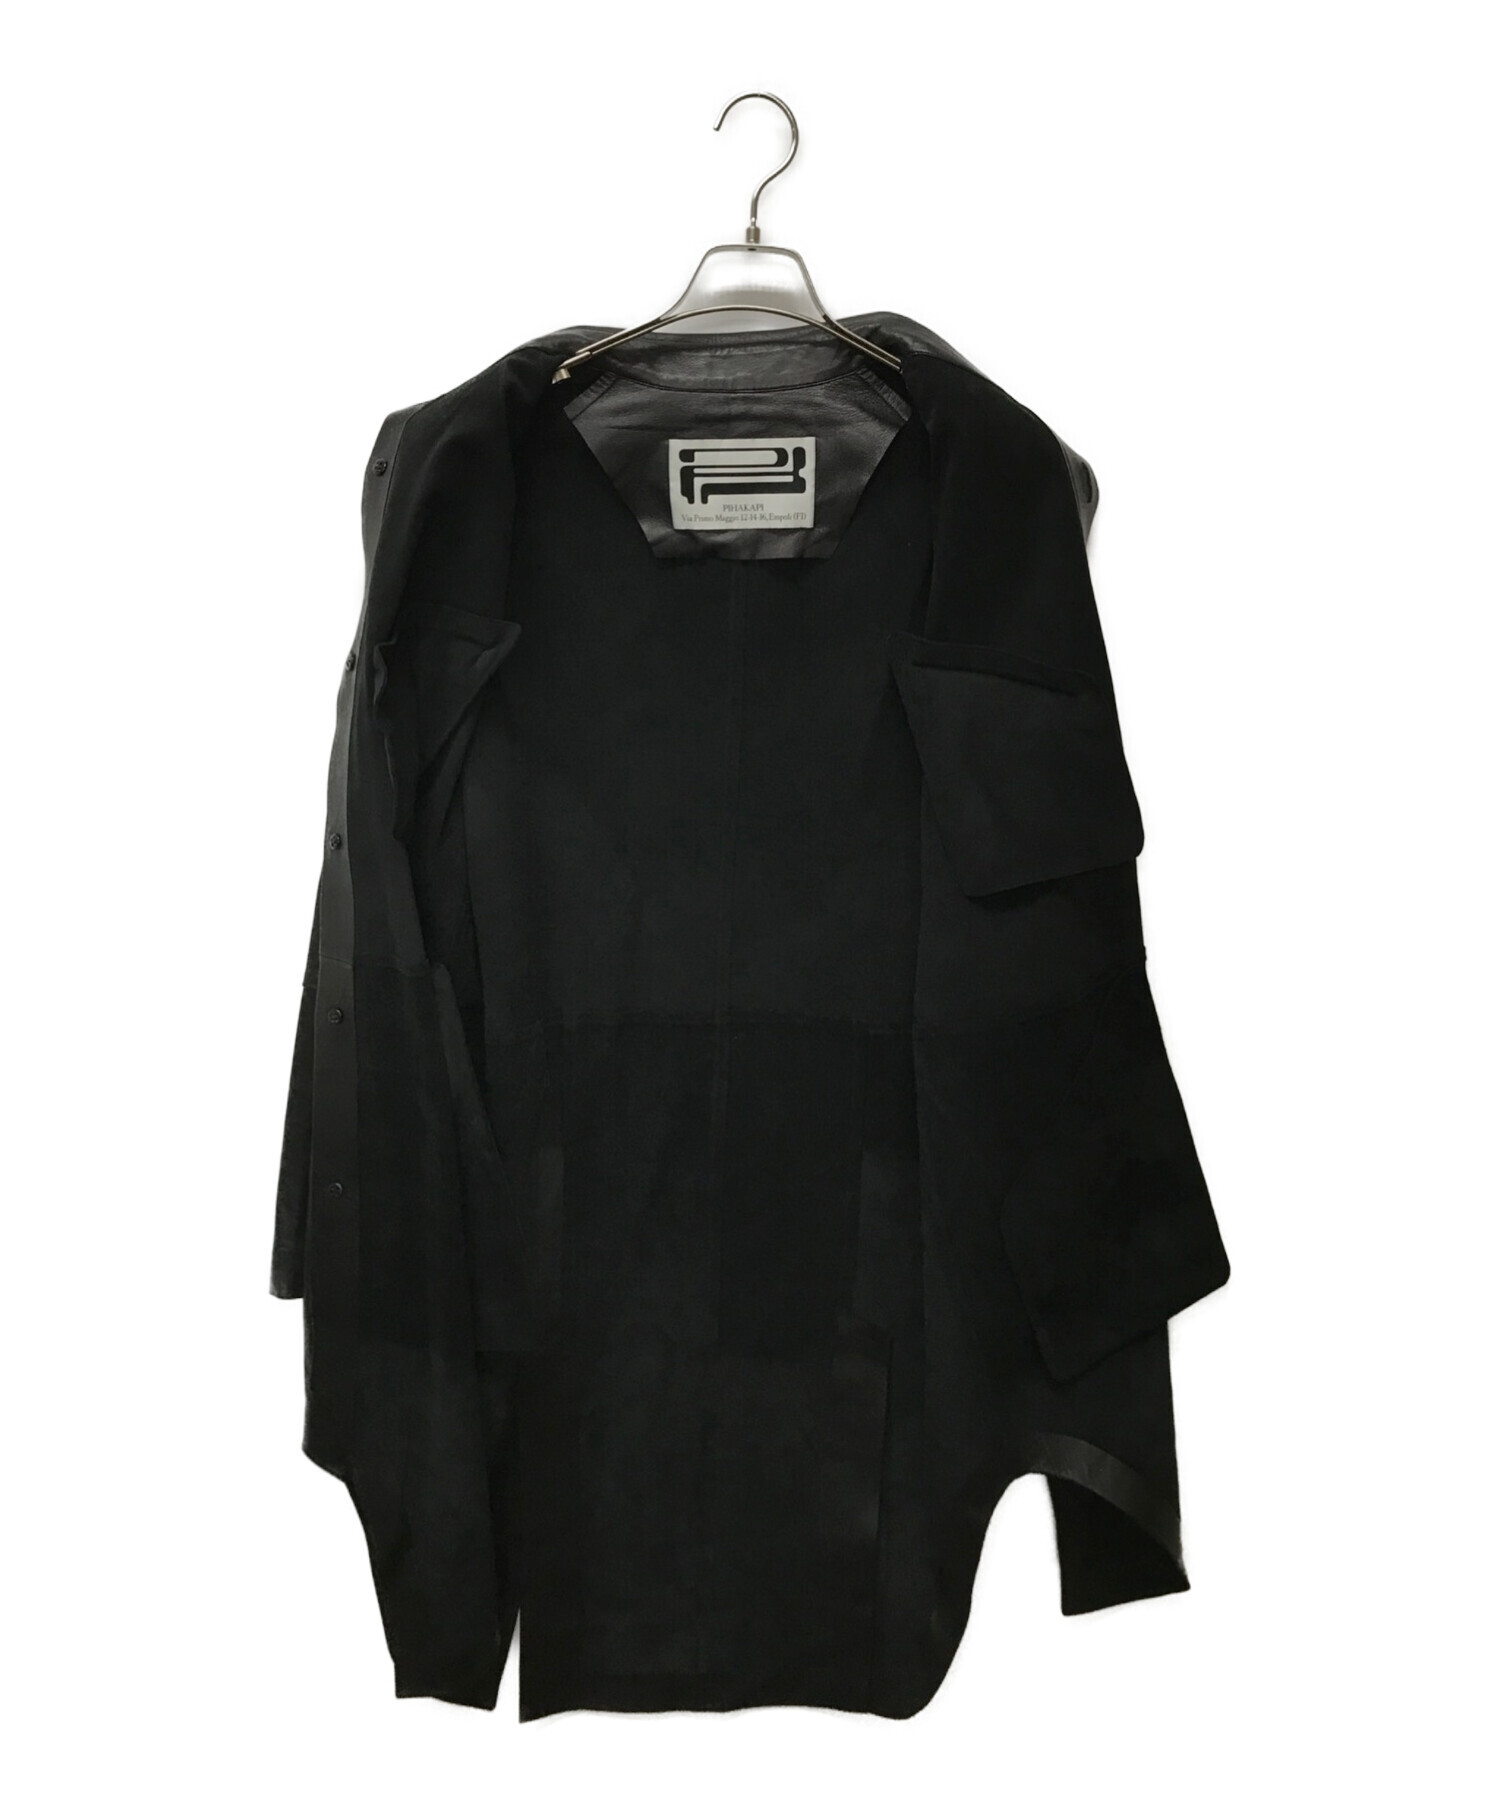 Pihakapi (ピパカピ) レザージャケット ブラック サイズ:表記なし